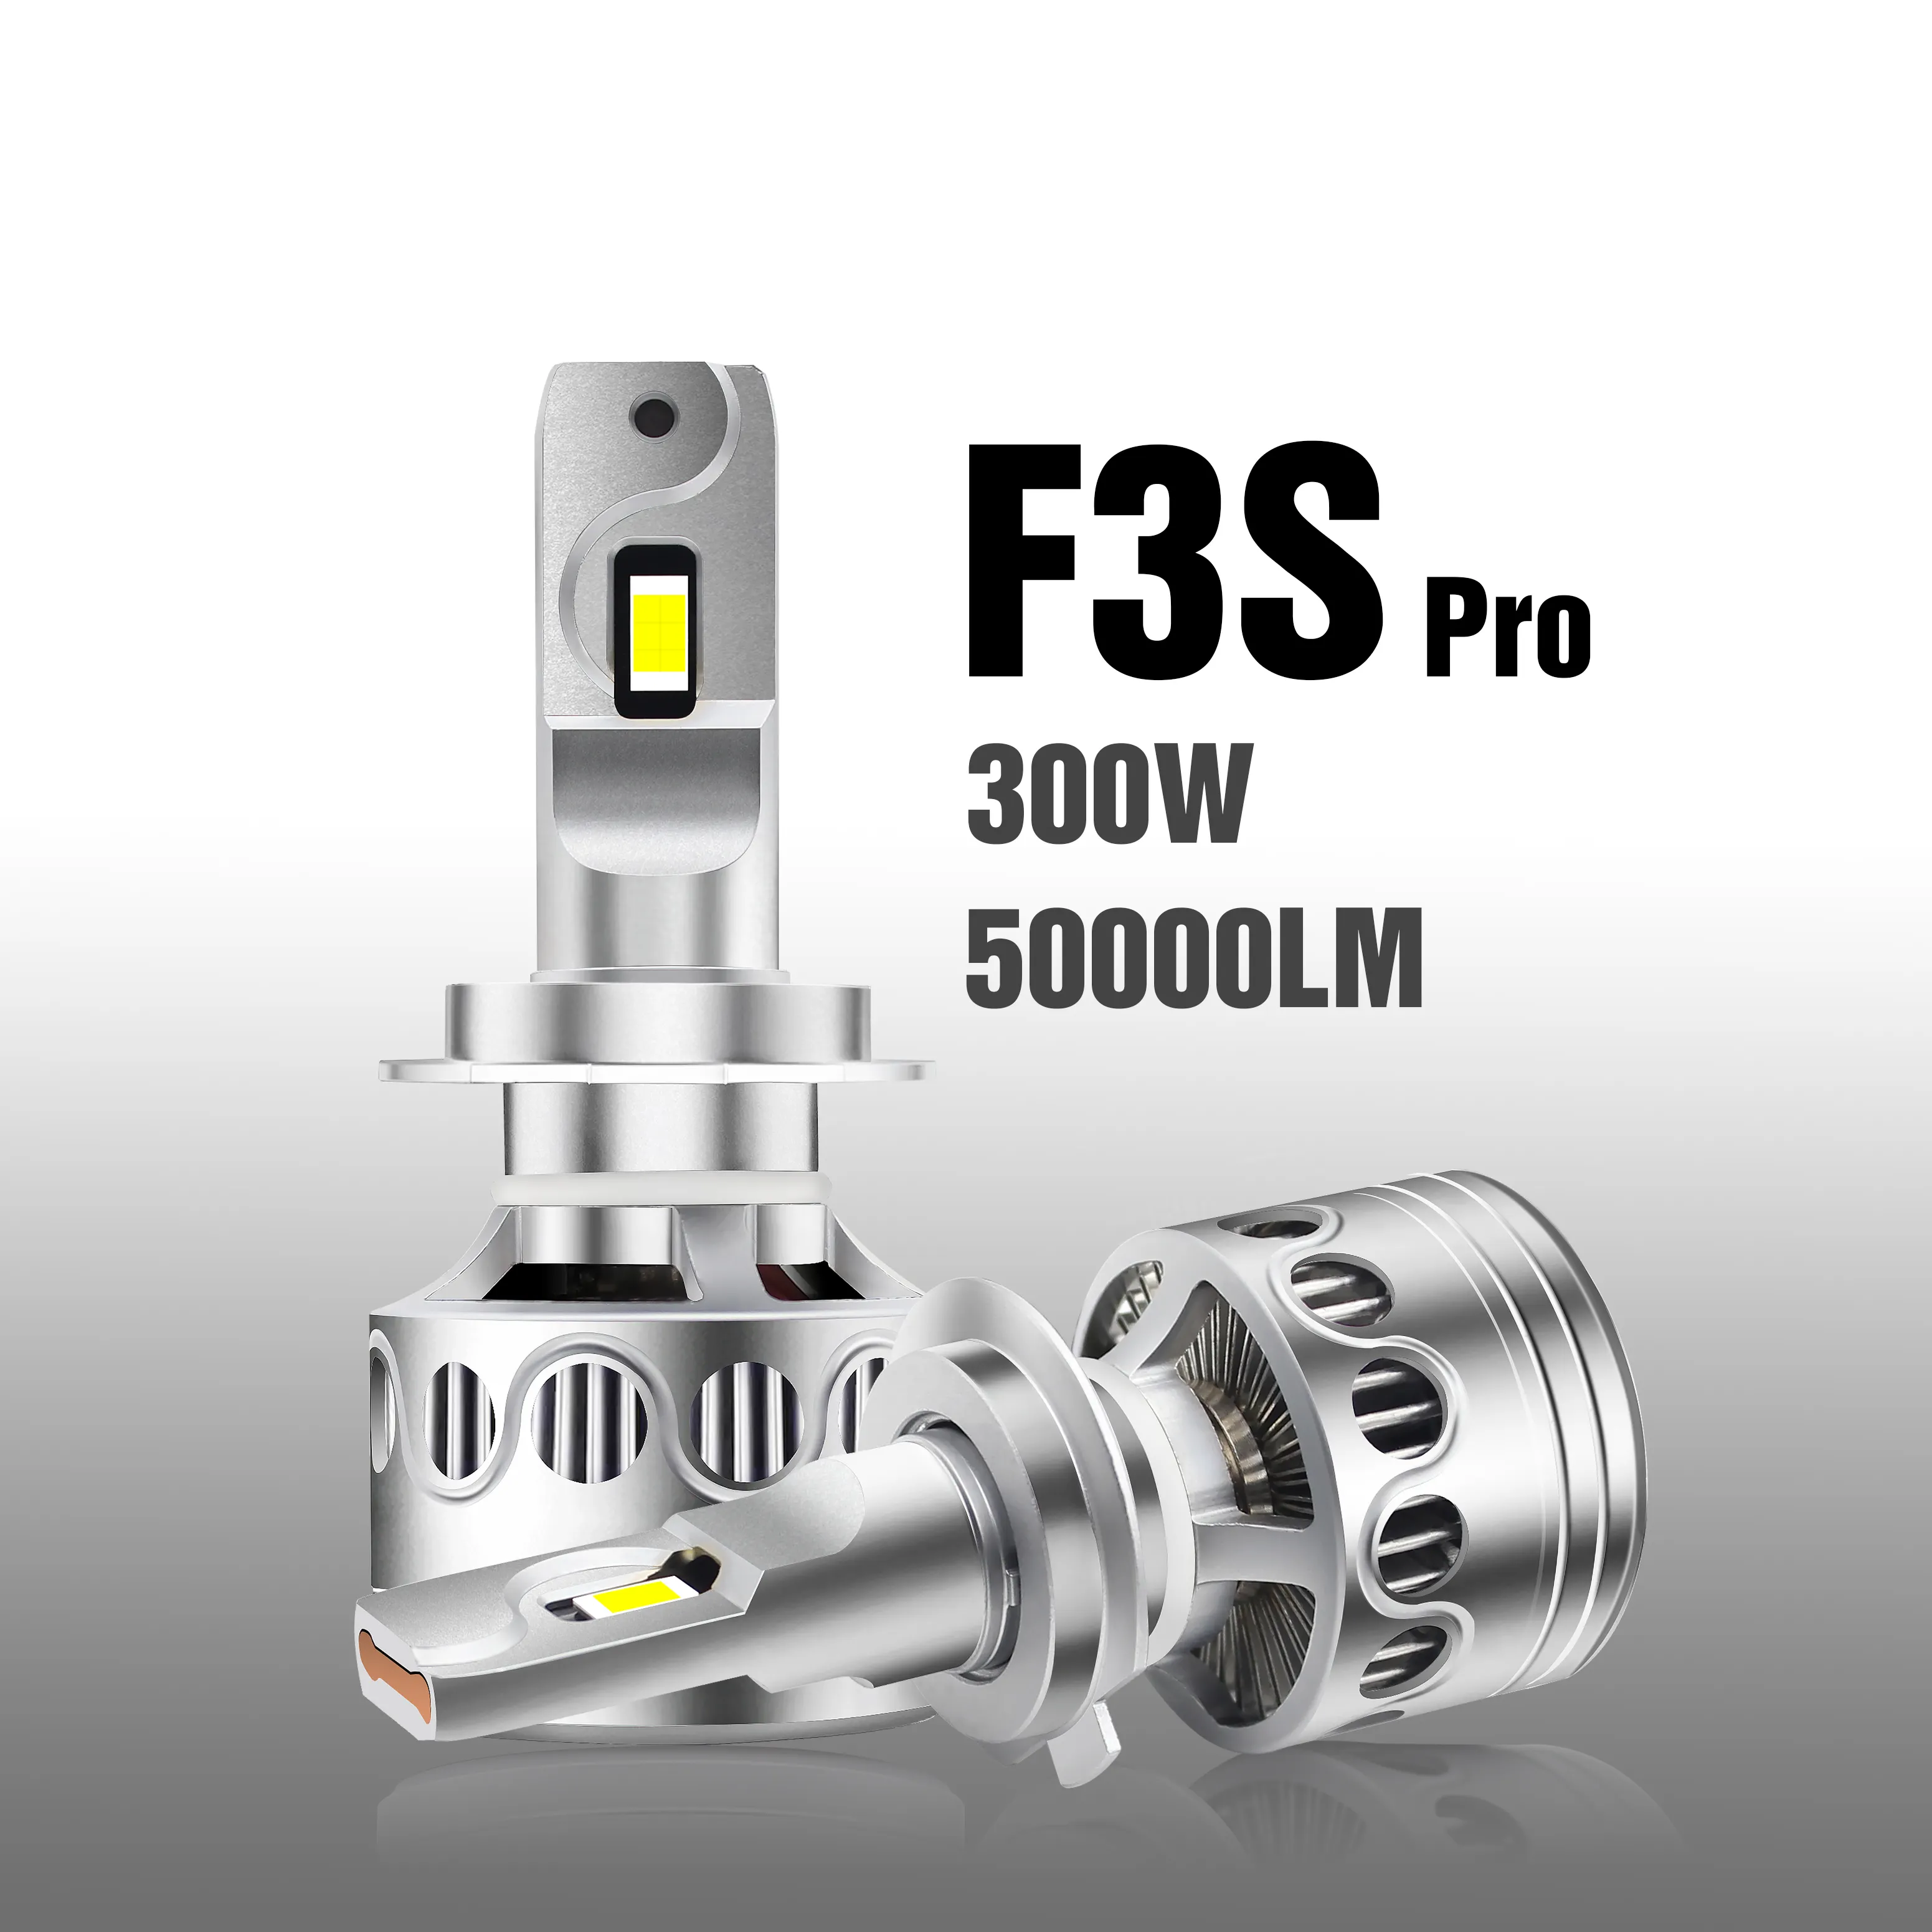 F3S Pro 300W 50000LM faros led Hi/Lo 빔 LED 자동차 라이트 H7 H11 9006 9007 HB5 LED 헤드 라이트 전구 12V LED 헤드 라이트 H4 LED